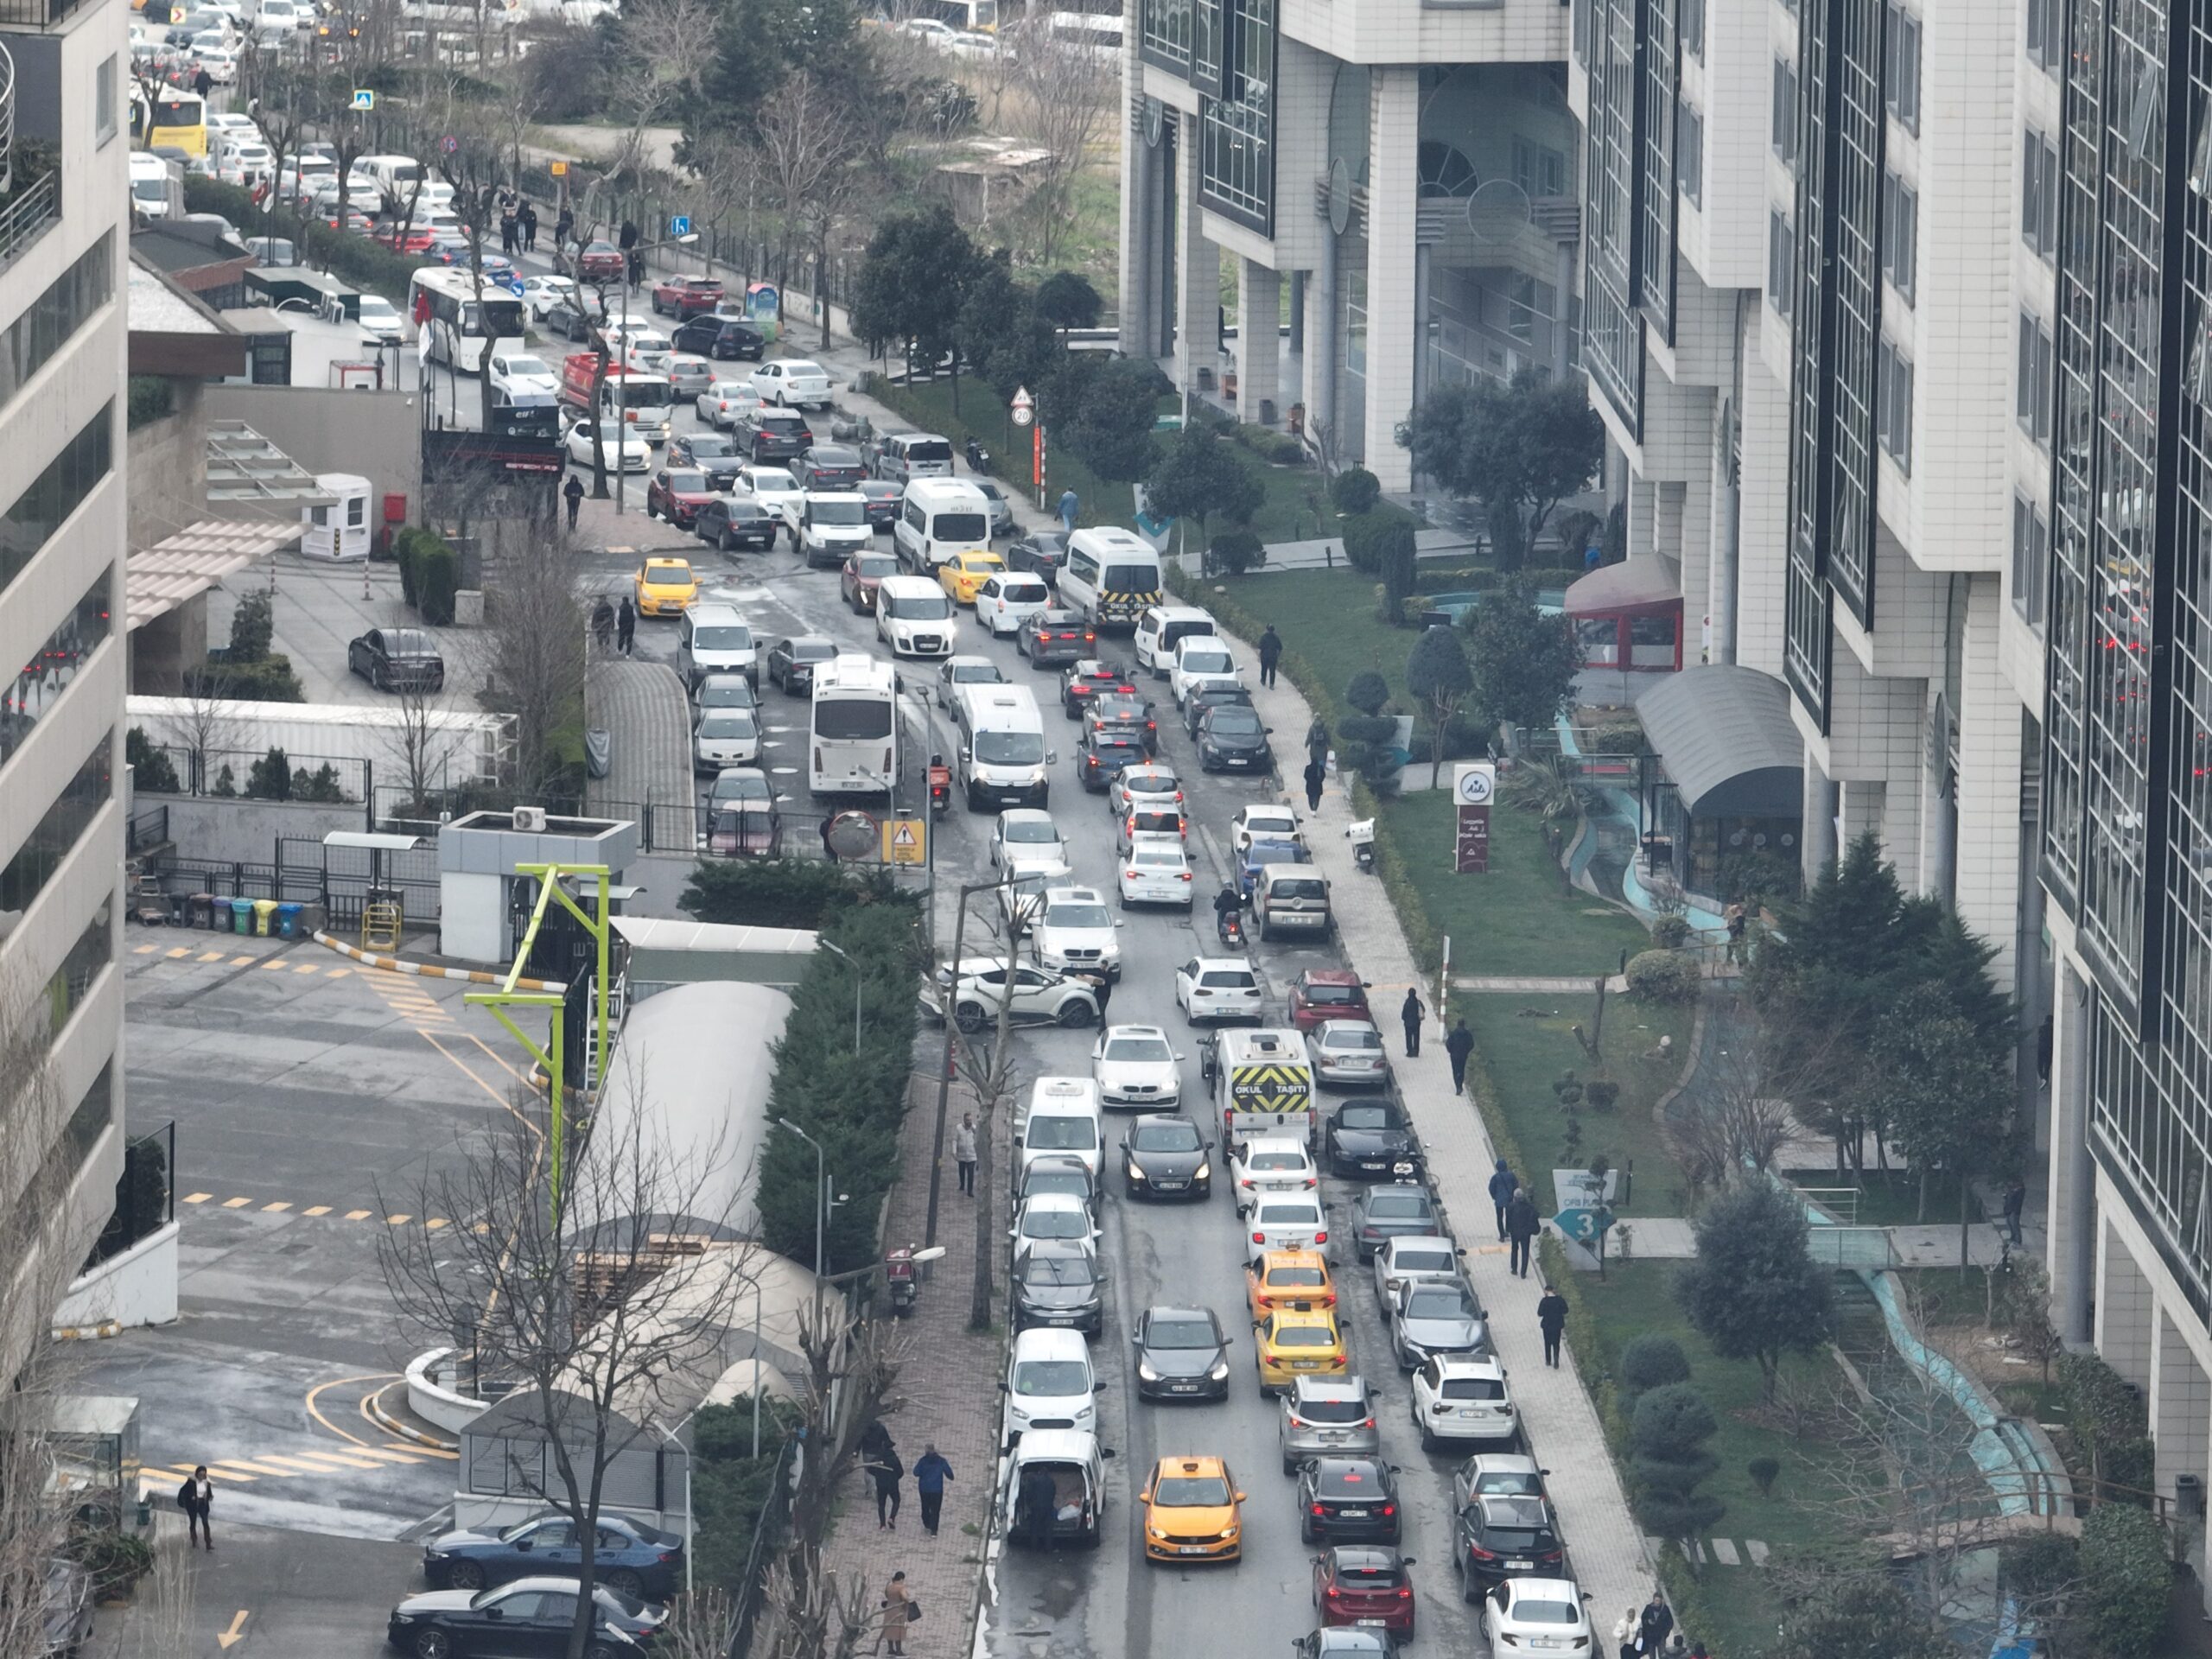 İstanbul’da Taşıt Yoğunluğu Rekor Seviyelere Ulaştı